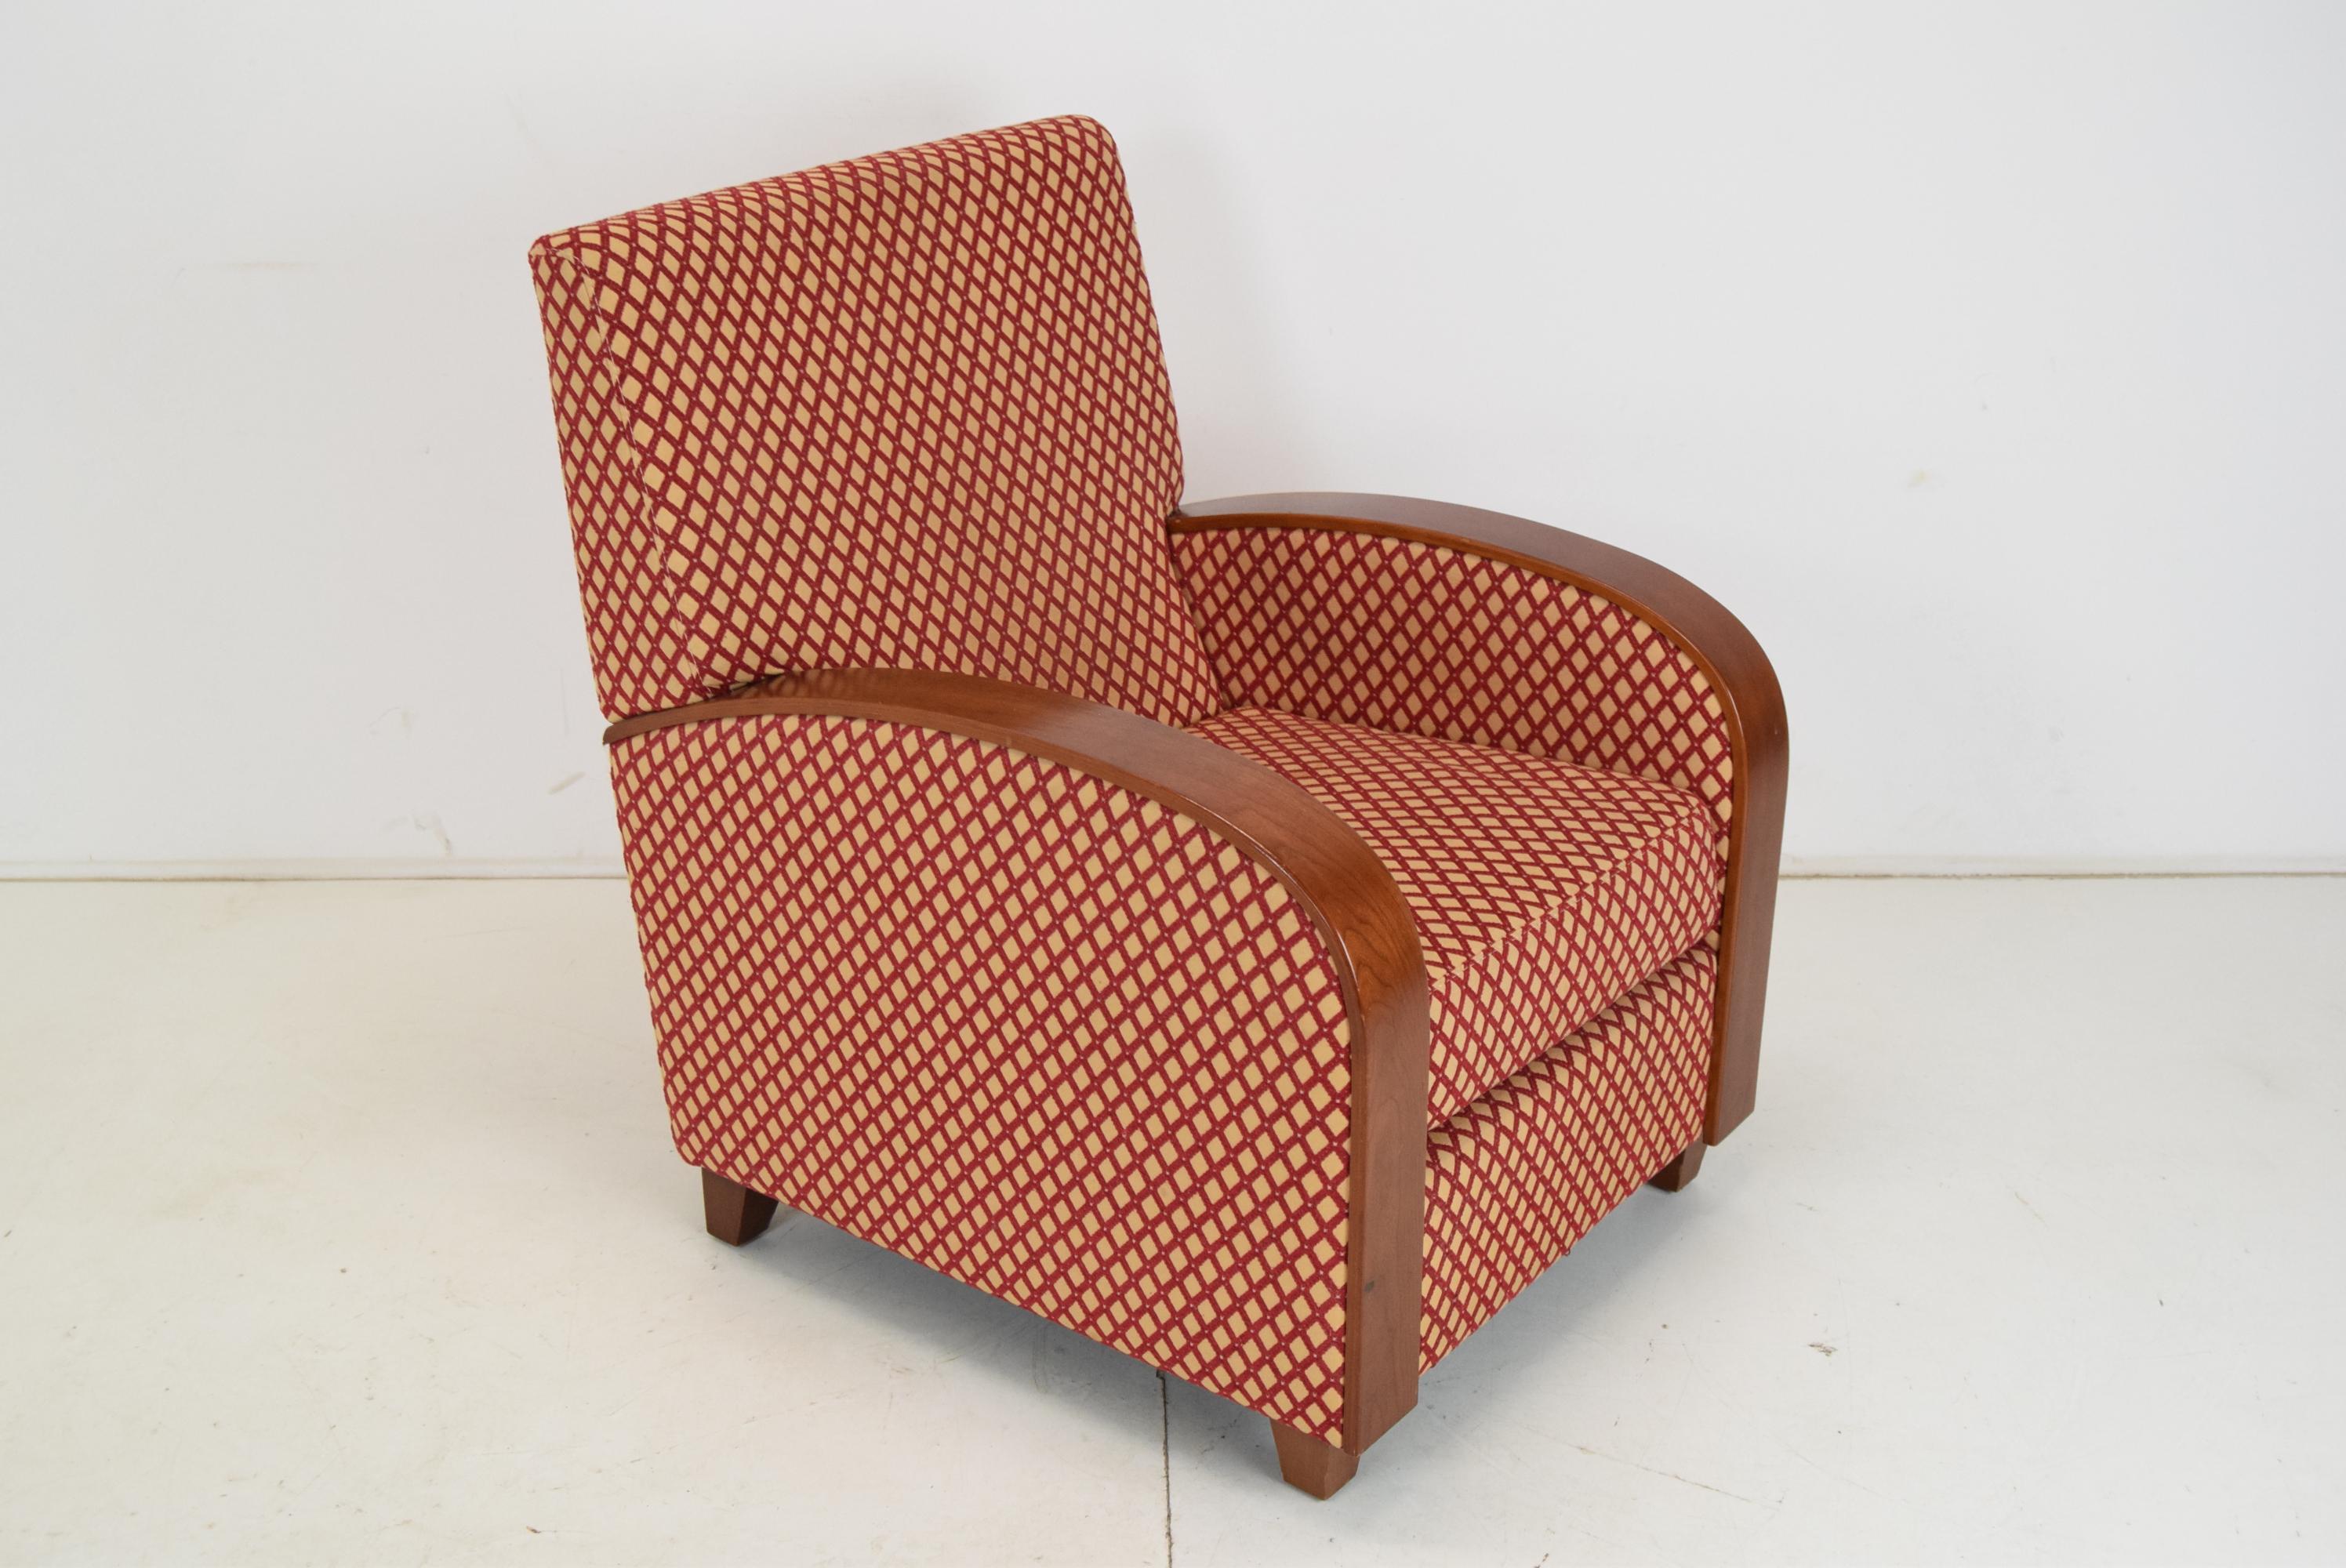 
Hergestellt in der Tschechoslowakei
Hergestellt aus Stoff, Holz
Zwei Stück auf Lager
Design Sessel im Art Deco Stil 
Guter Originalzustand